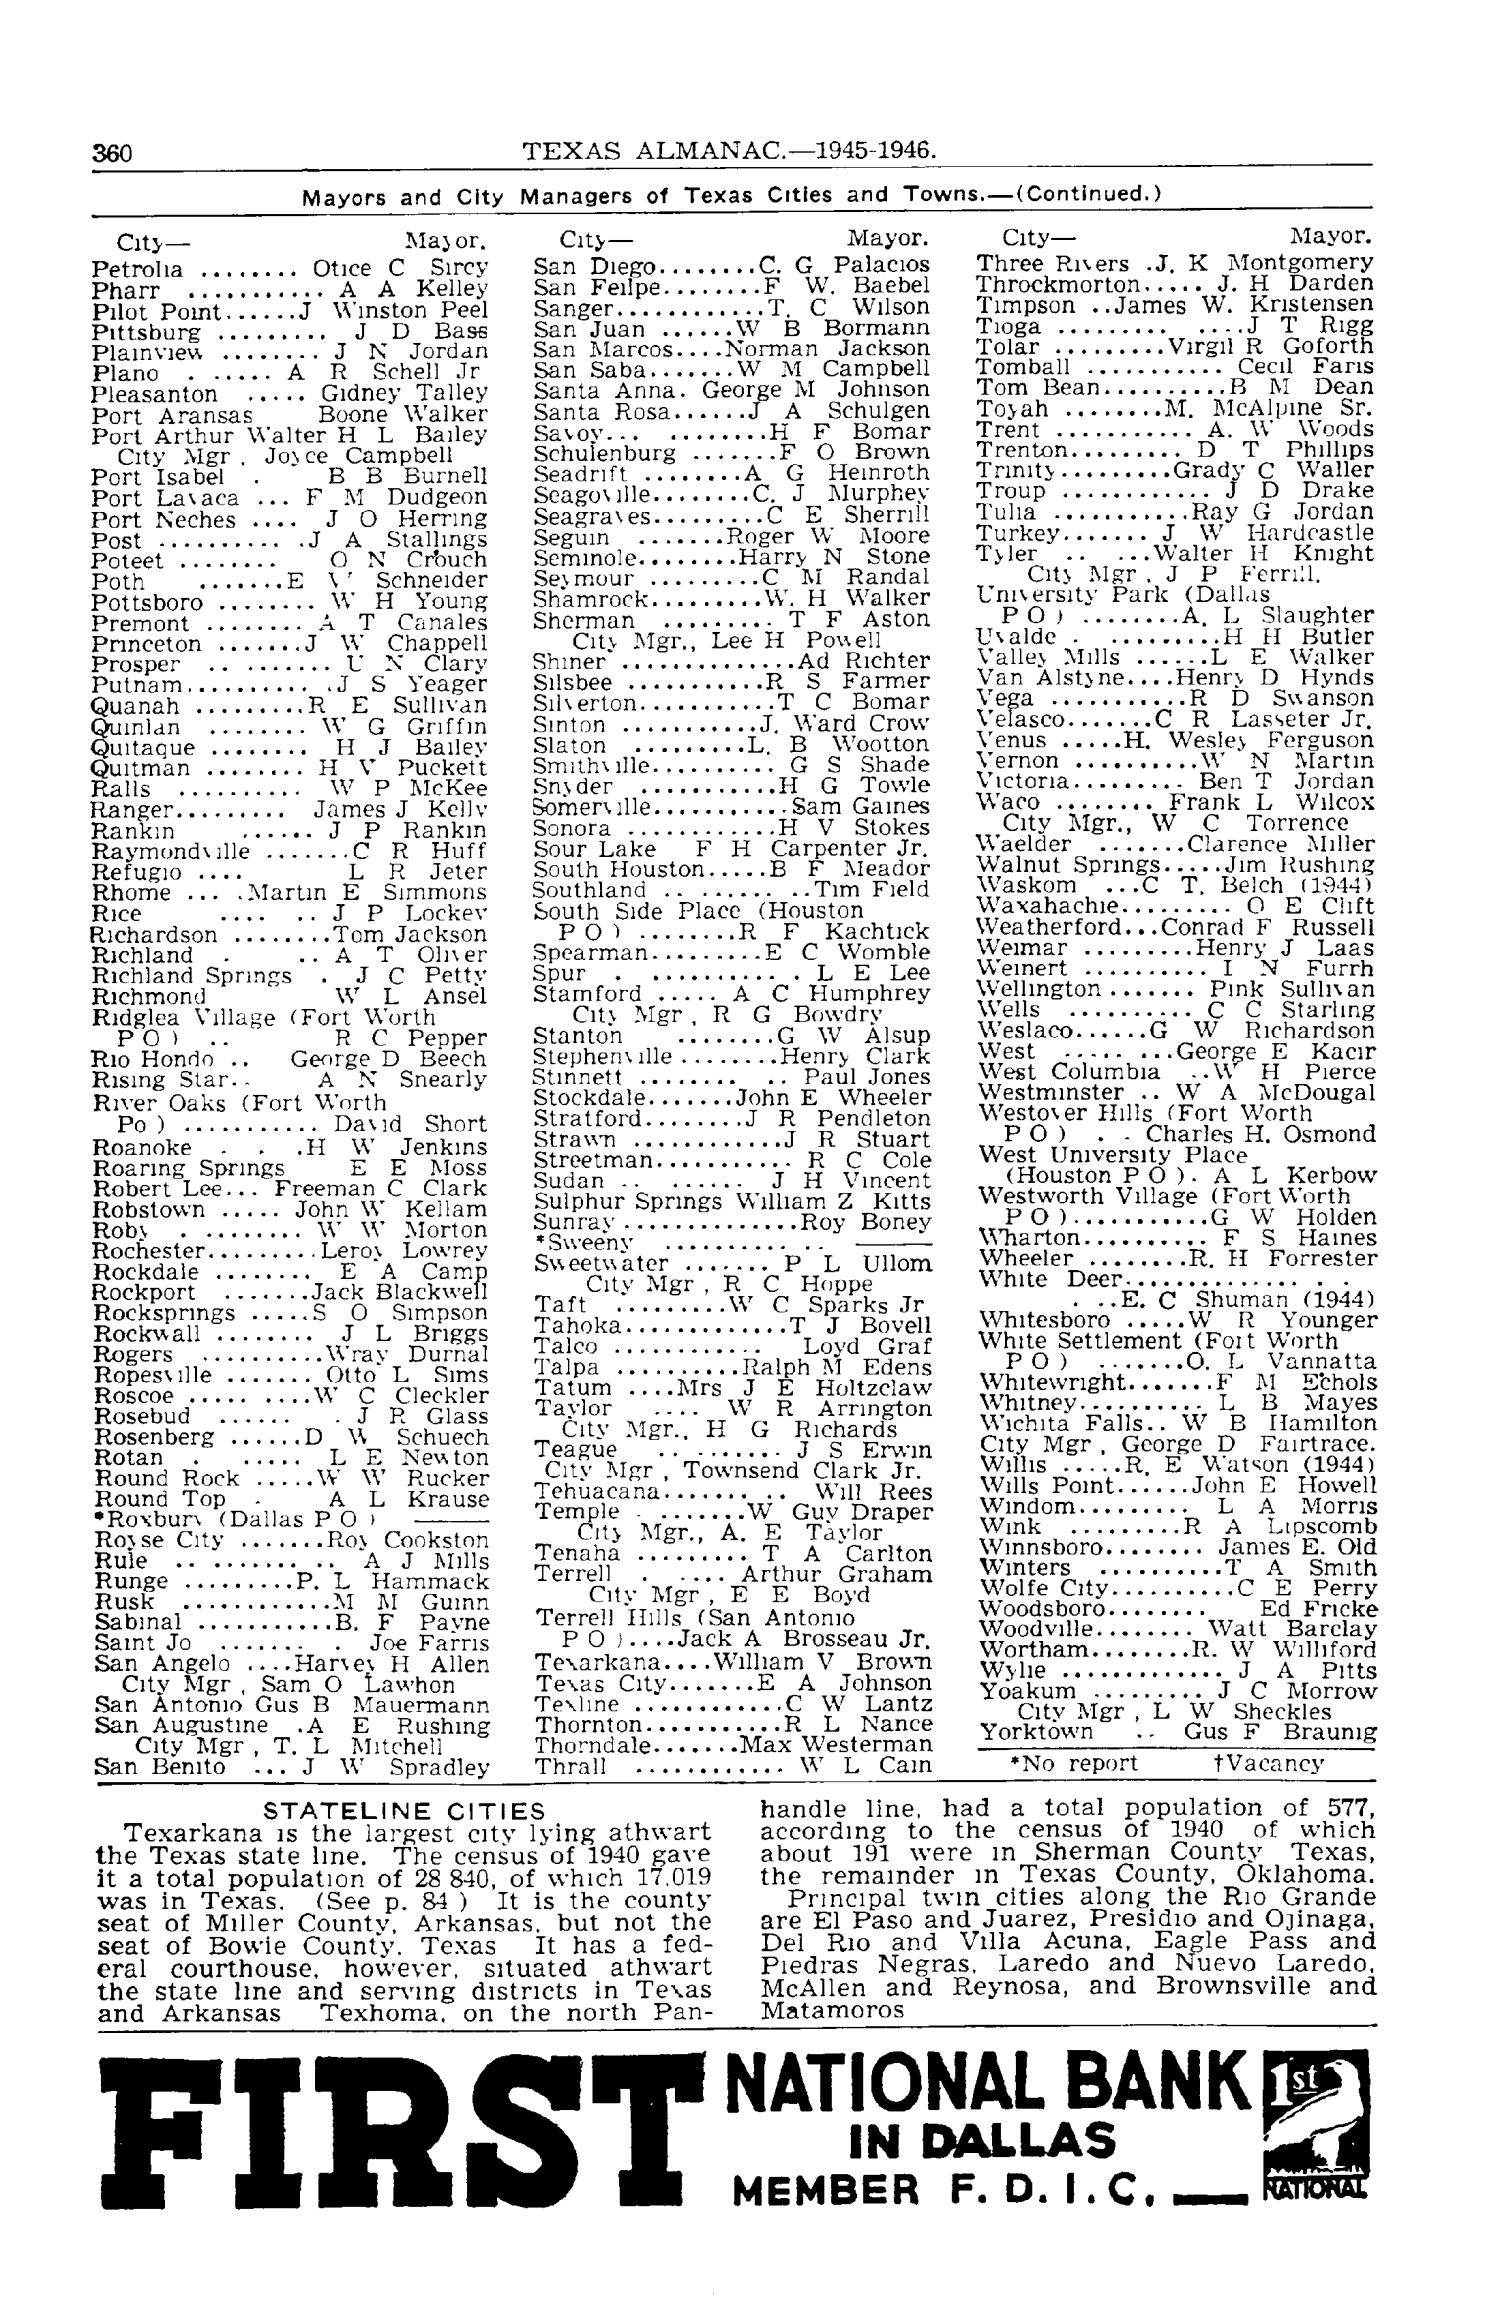 Texas Almanac, 1945-1946
                                                
                                                    360
                                                